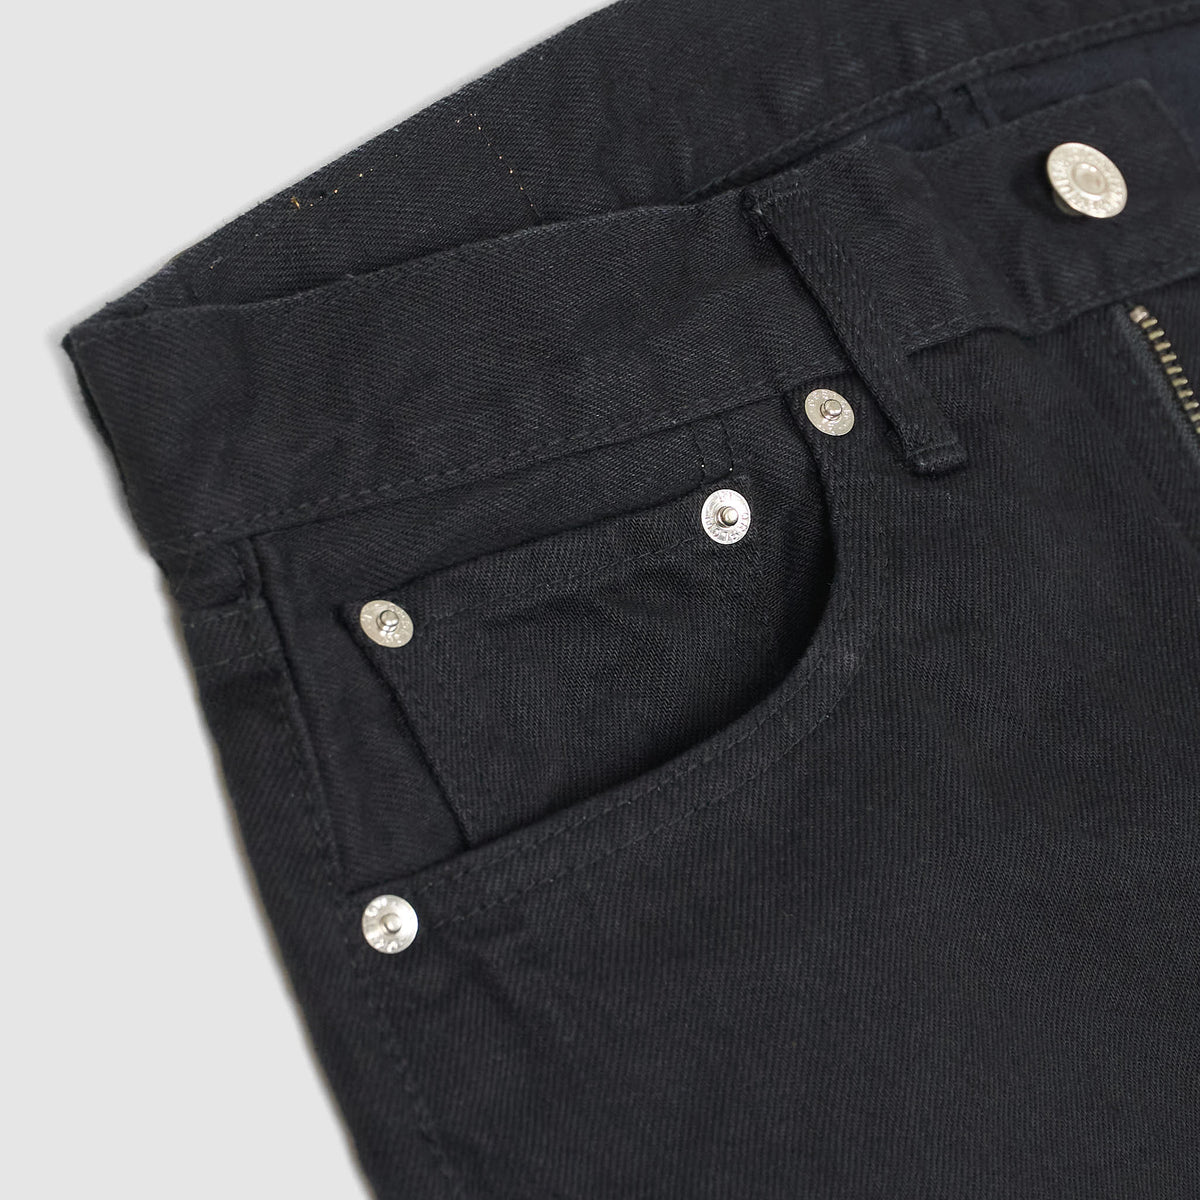 OrSlow 5- Pocket 107 Black Denim Slim Fit Jeans